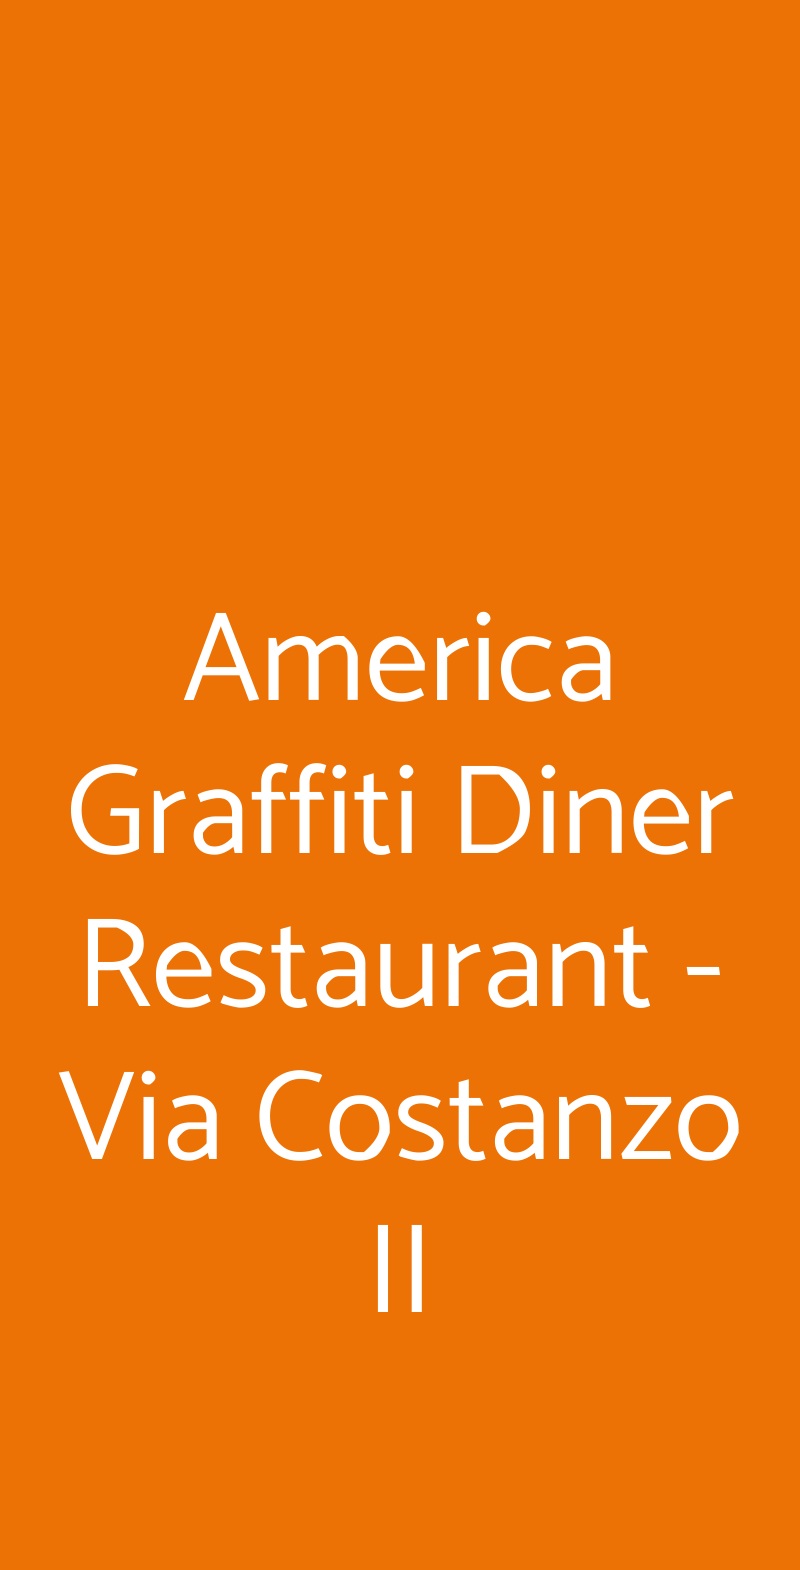 America Graffiti Diner Restaurant - Via Costanzo II Forli menù 1 pagina